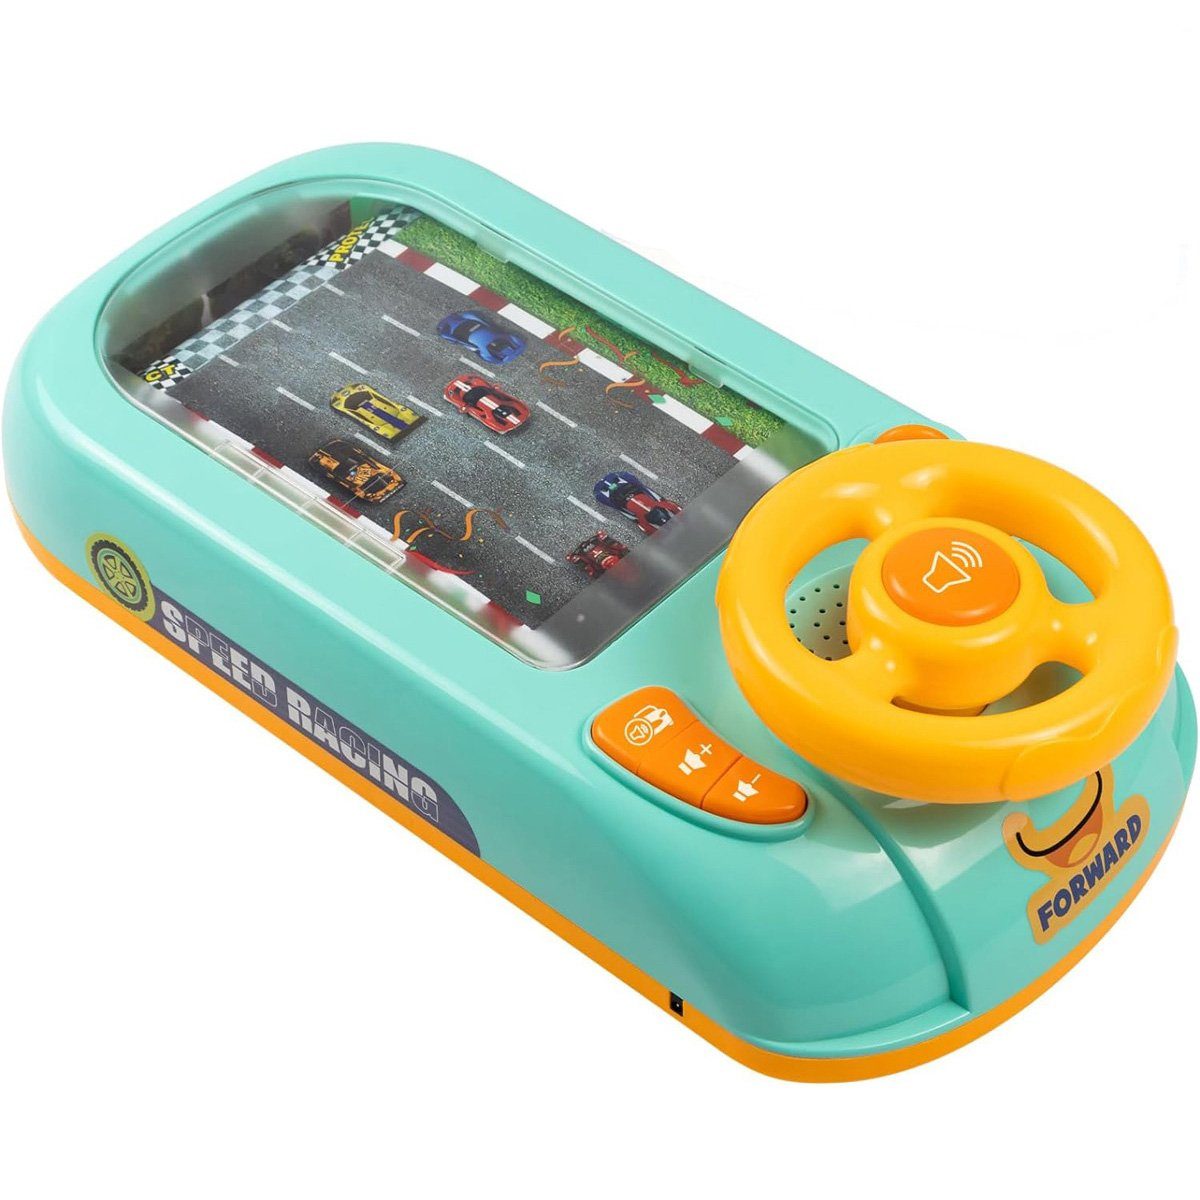 götäzer Spielzeug-Steuerrad Elektronisches Simulations-Lenkrad-Spielzeug-Fahr-Rennsimulationsspiel,  Audio-interaktives Lernspielzeug für sicheres Fahren für Kinder